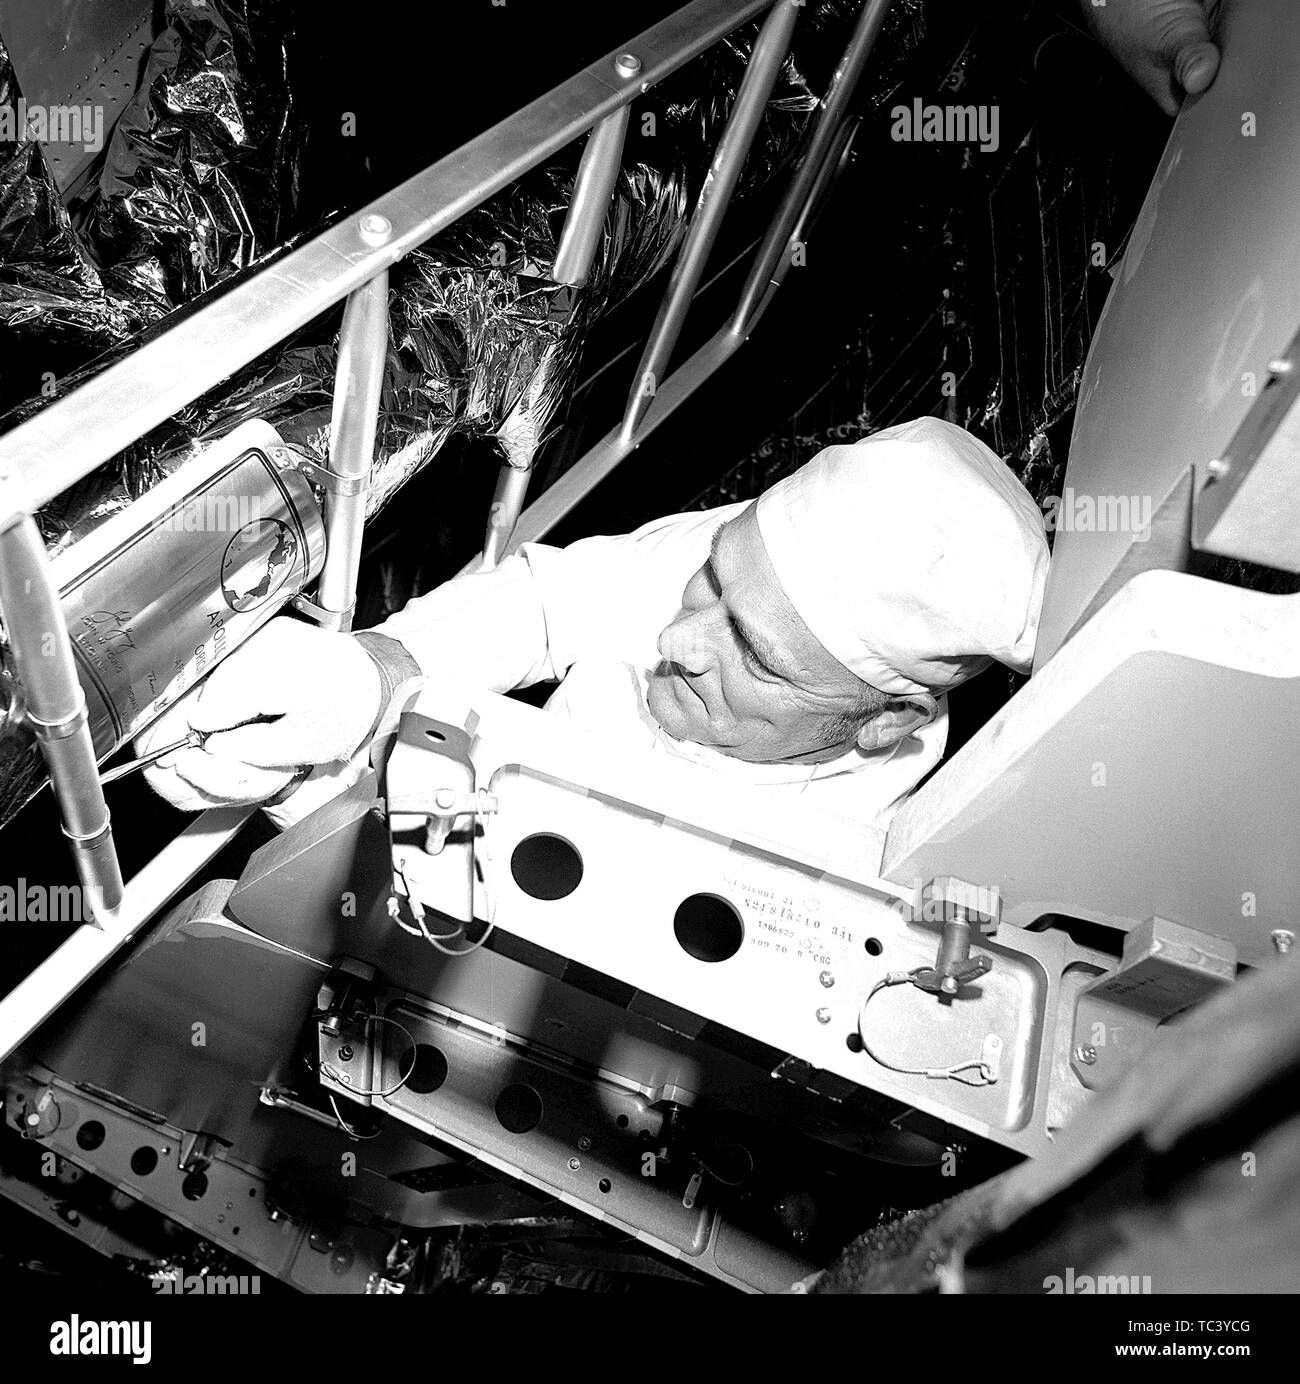 Grumman Aerospace Corporation técnico Ken Crow fijar una placa de cojinete con la tripulación nombres y firmas a la pata delantera de la Apolo 16 vehículo de lanzamiento Saturno V, 10 de abril de 1972. Imagen cortesía de la Administración Nacional de Aeronáutica y del Espacio (NASA). () Foto de stock